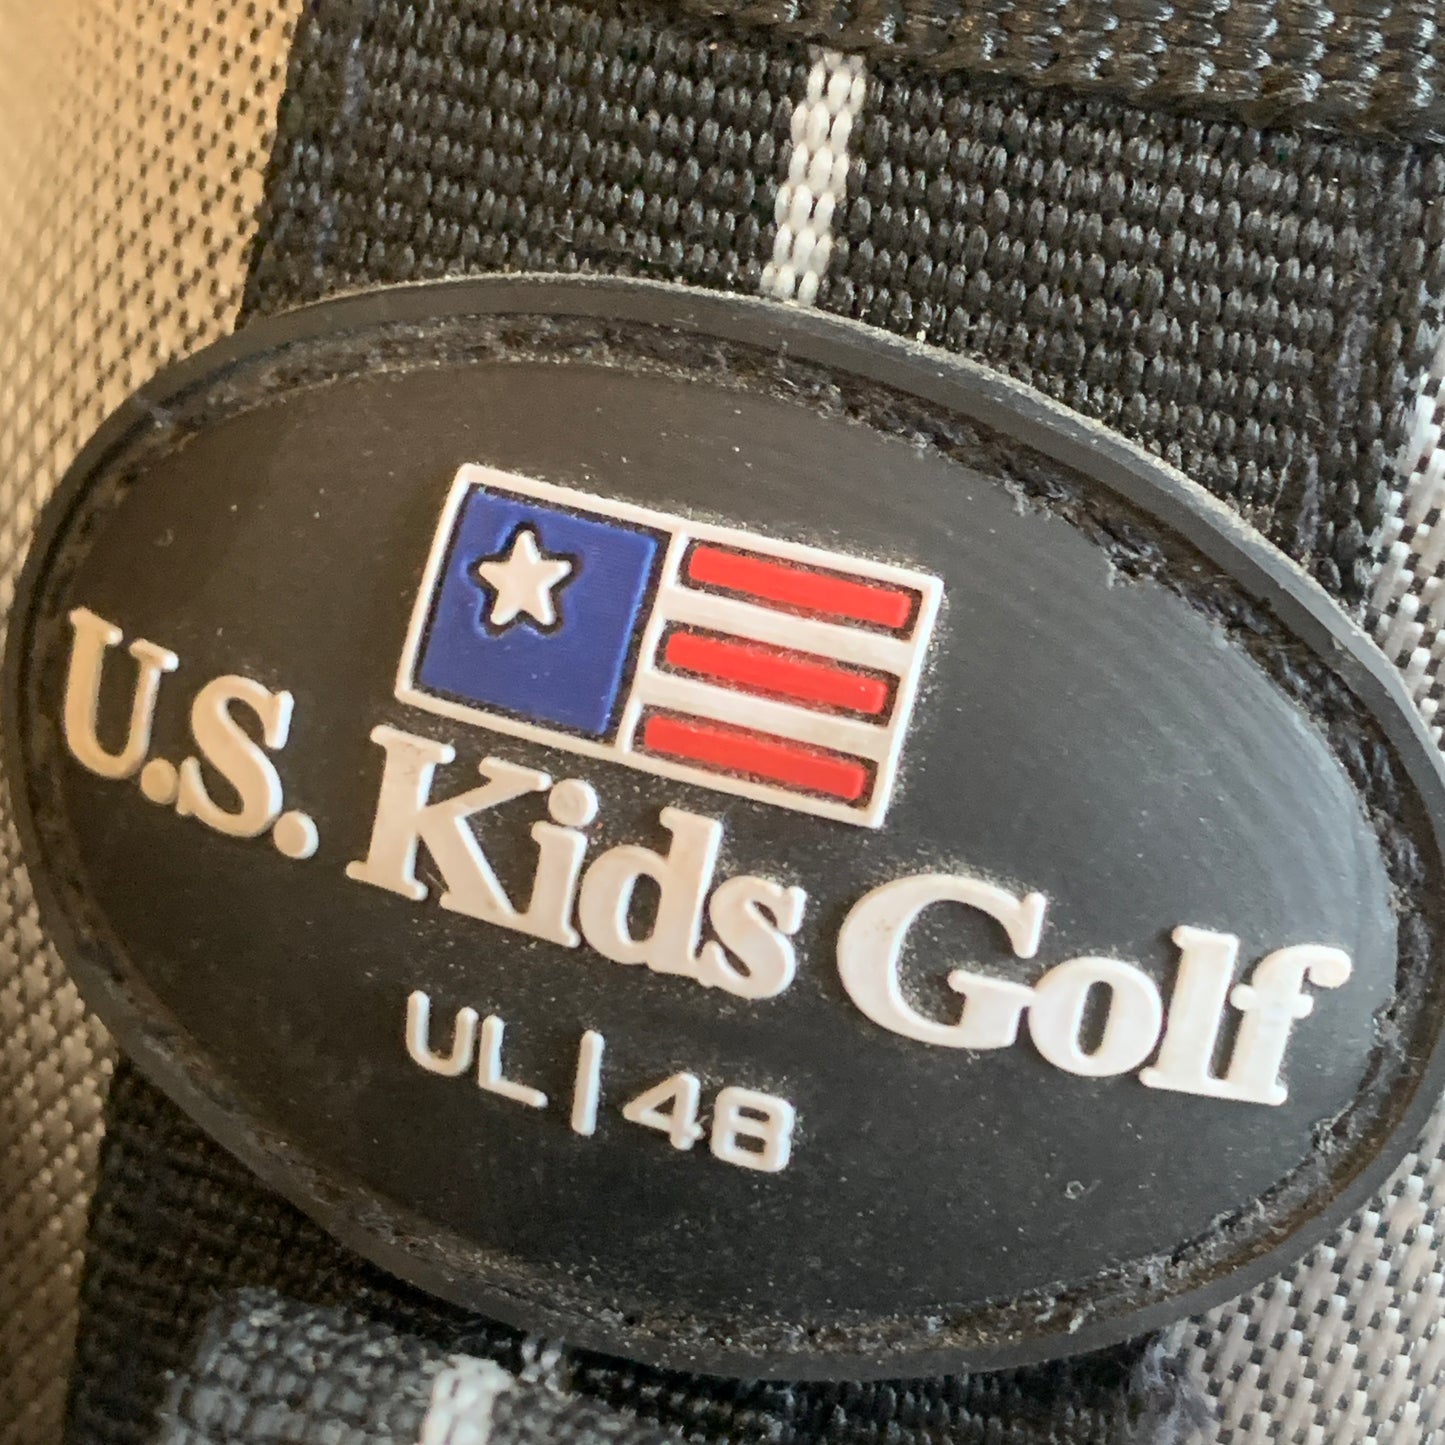 JR LH US Kids UL48 Golf Set